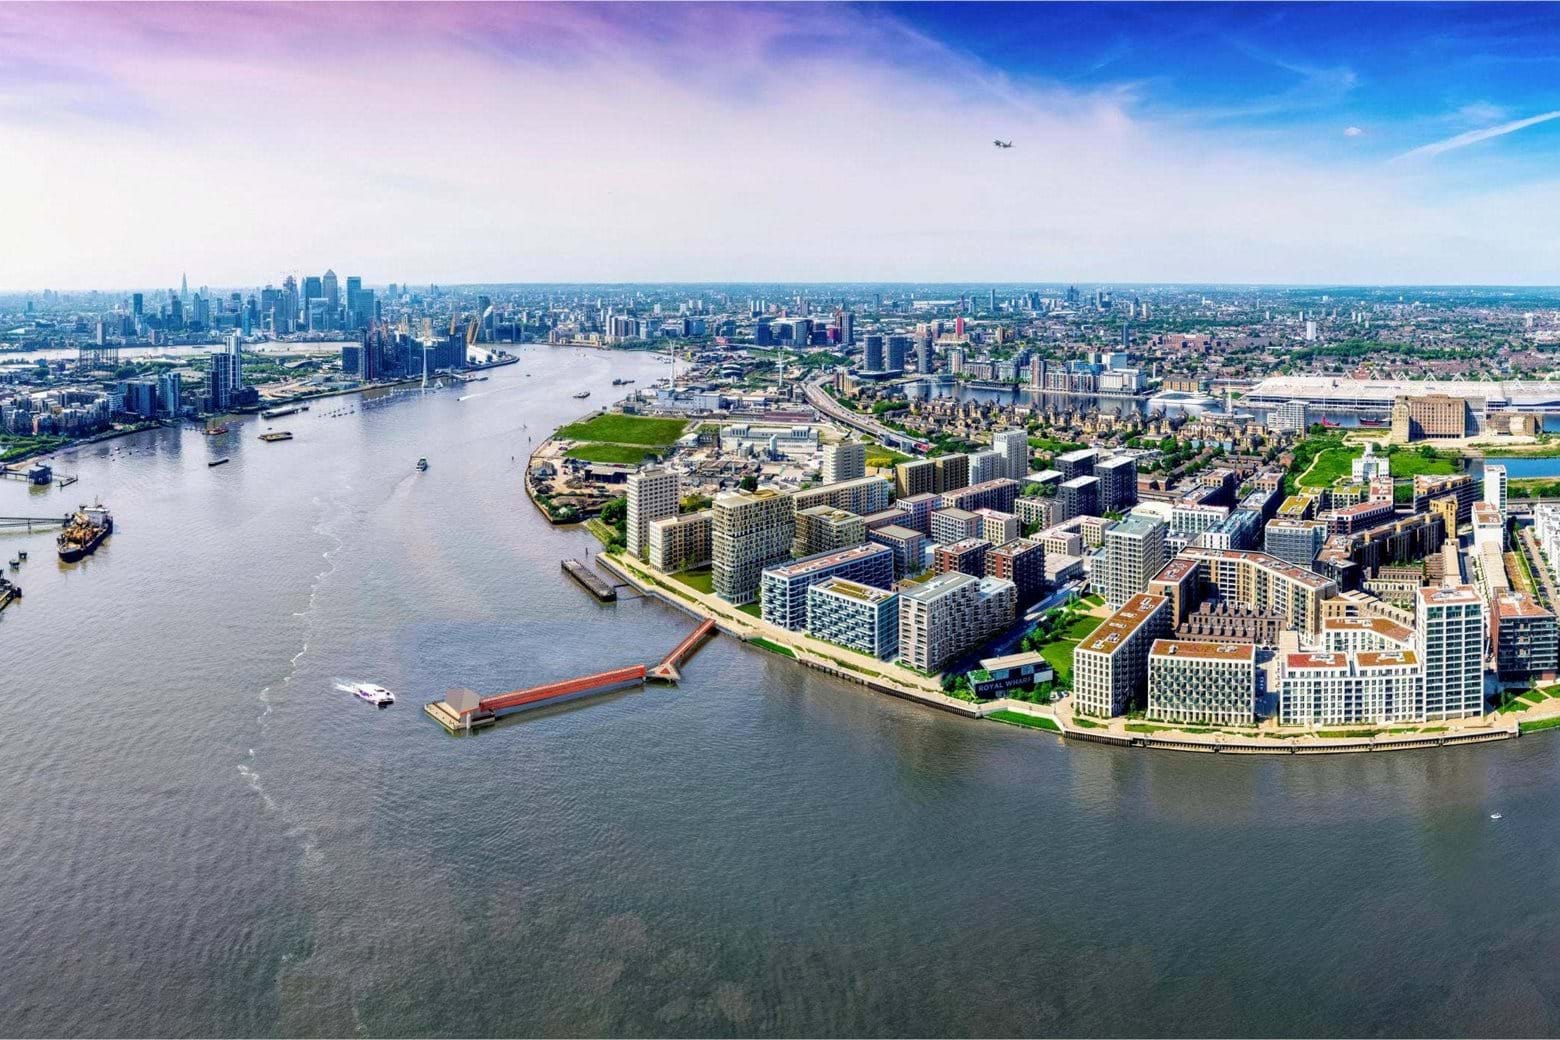 The Royal Docks London Development Plan